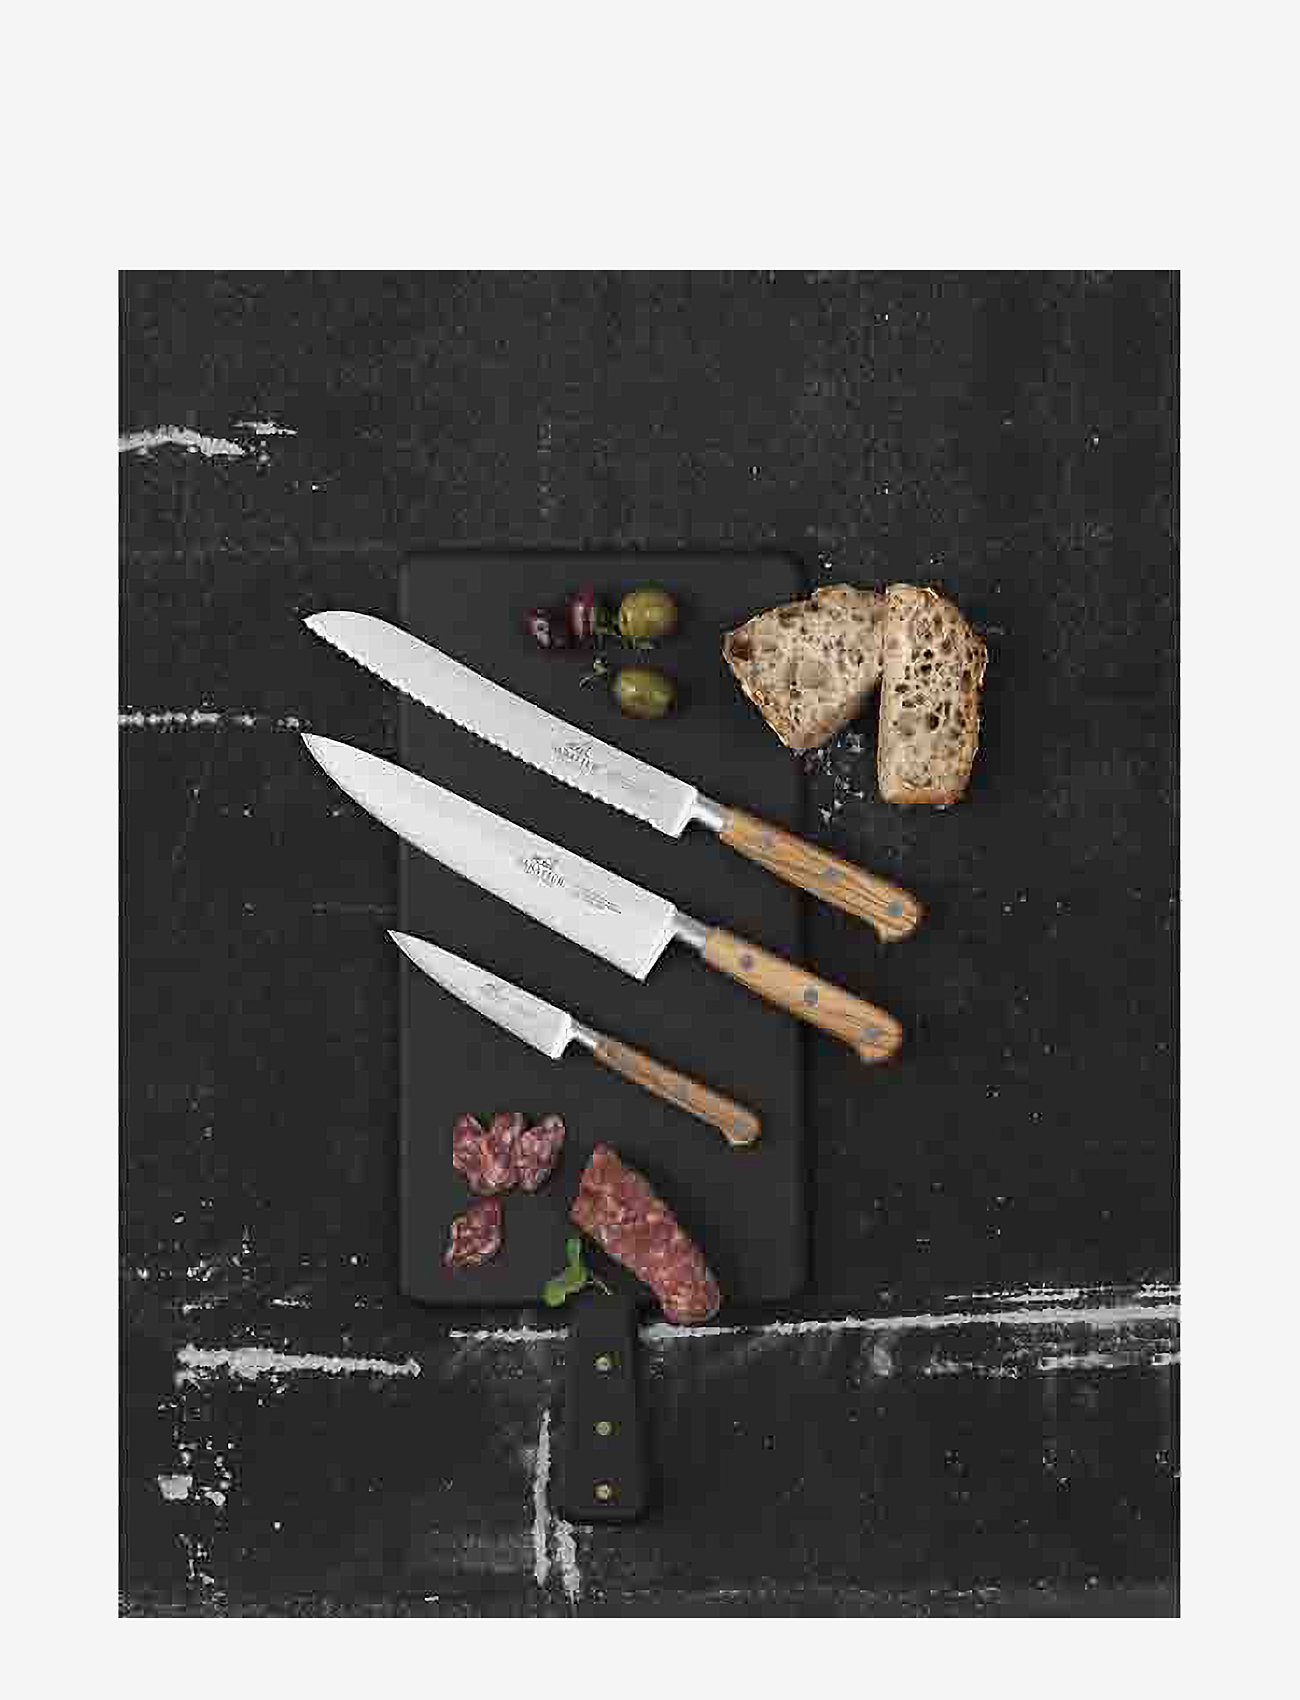 Lion Sabatier - Chef knife Ideal Provence 20cm - kokkeknive - steel/wood - 1